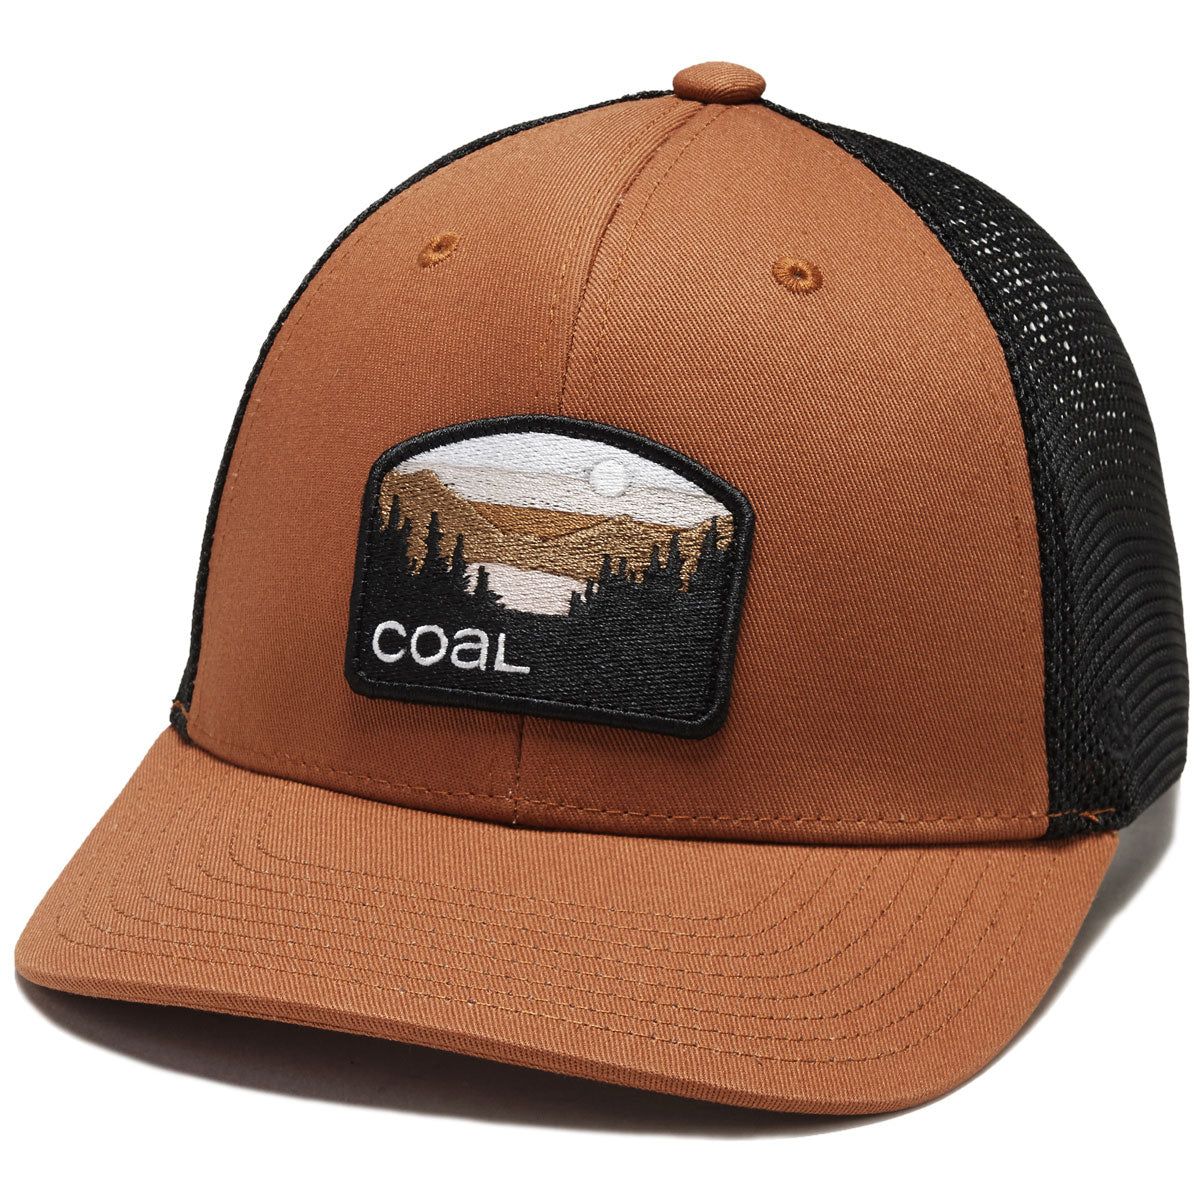 Coal Hauler Low One Hat - Coyote image 1